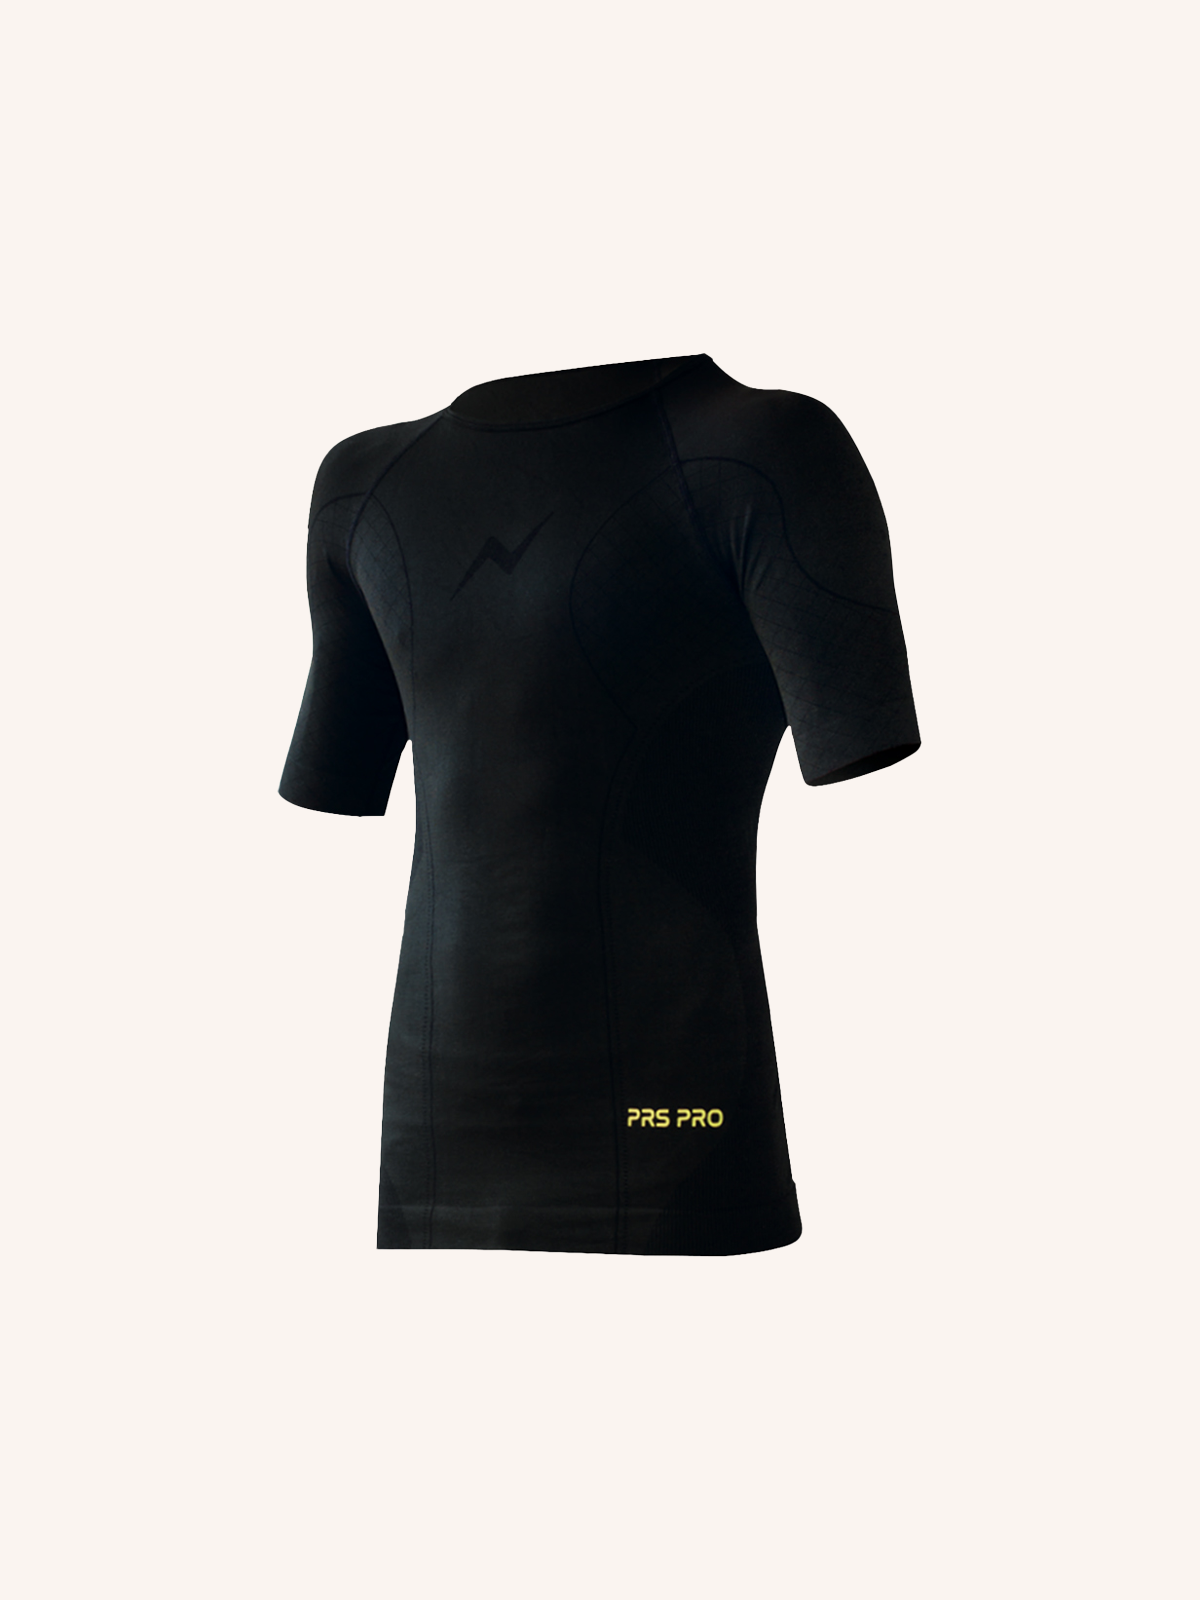 Technical T-Shirt for Men | Plain Color | Single Pack | PRS PRO 05